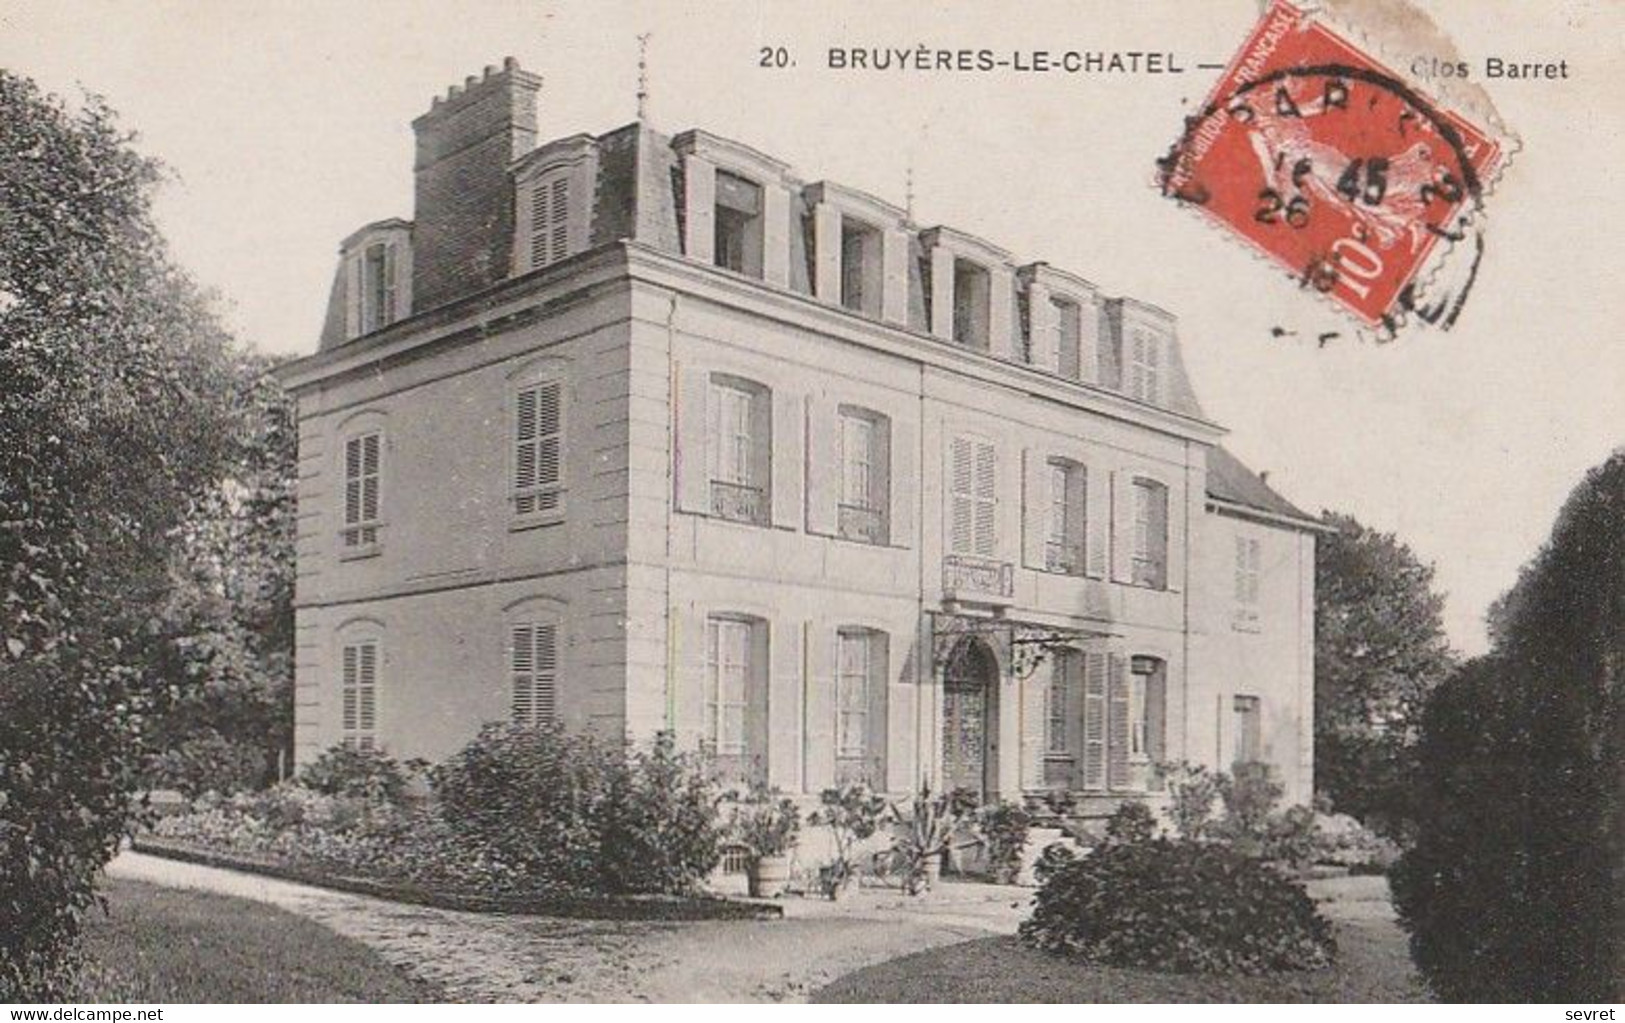 BRUYERES-LE-CHATEL. - Château Du Clos Barret - Bruyeres Le Chatel